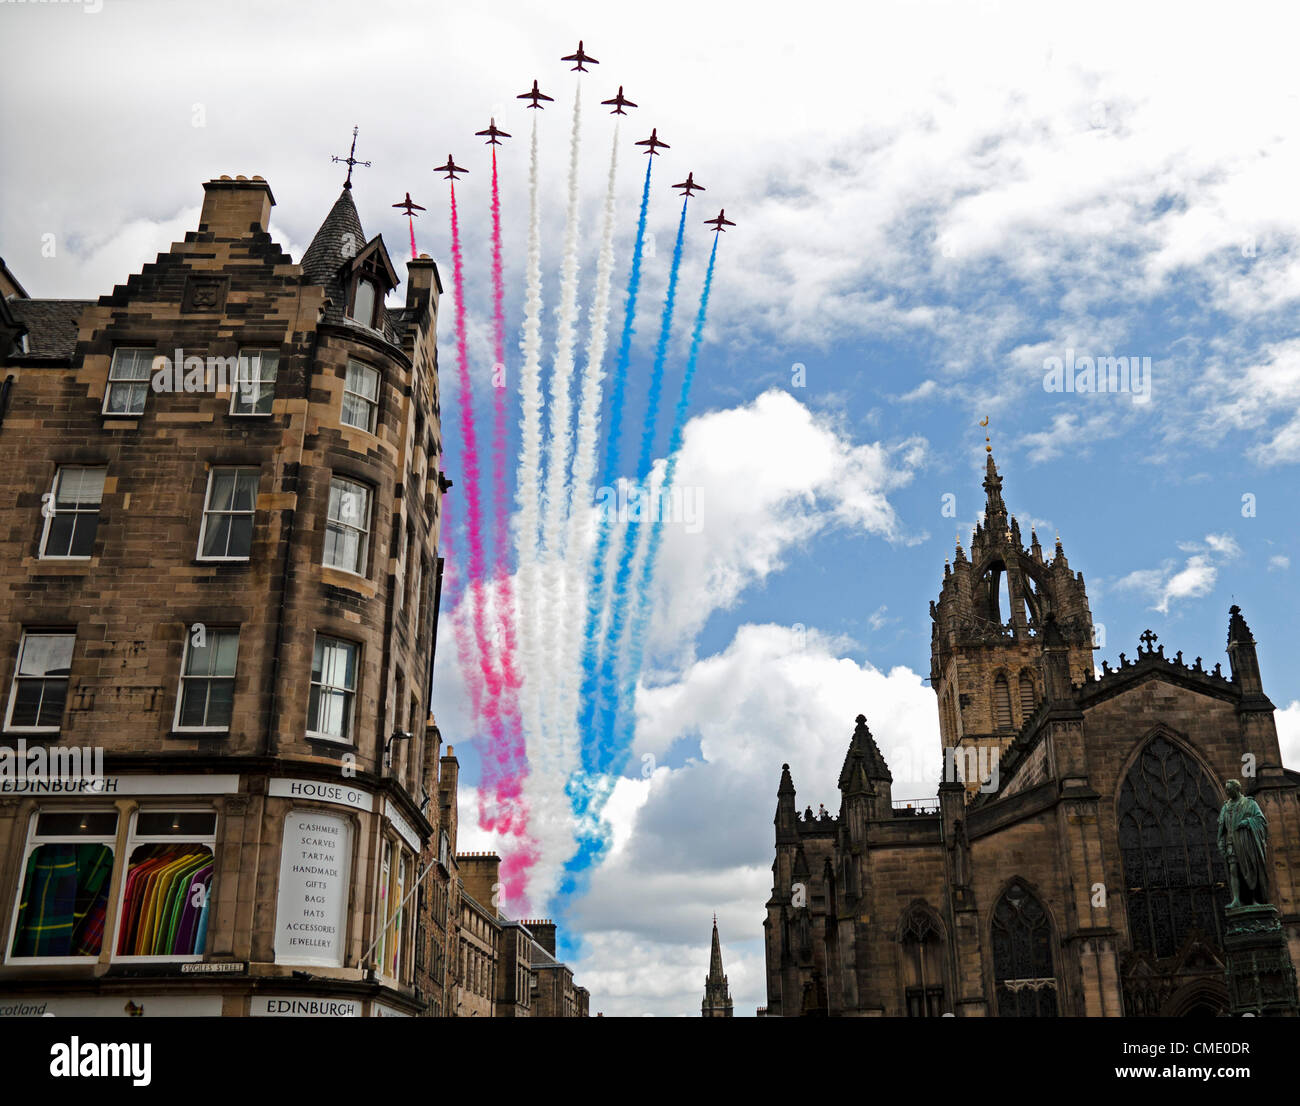 27. Juli 2012, Edinburgh, Schottland, Red Arrows flypast über der St Giles Cathedral, Royal Mile um 12.33 Uhr, um den Eröffnungstag der Olympischen Spiele 2012 zu feiern. Stockfoto